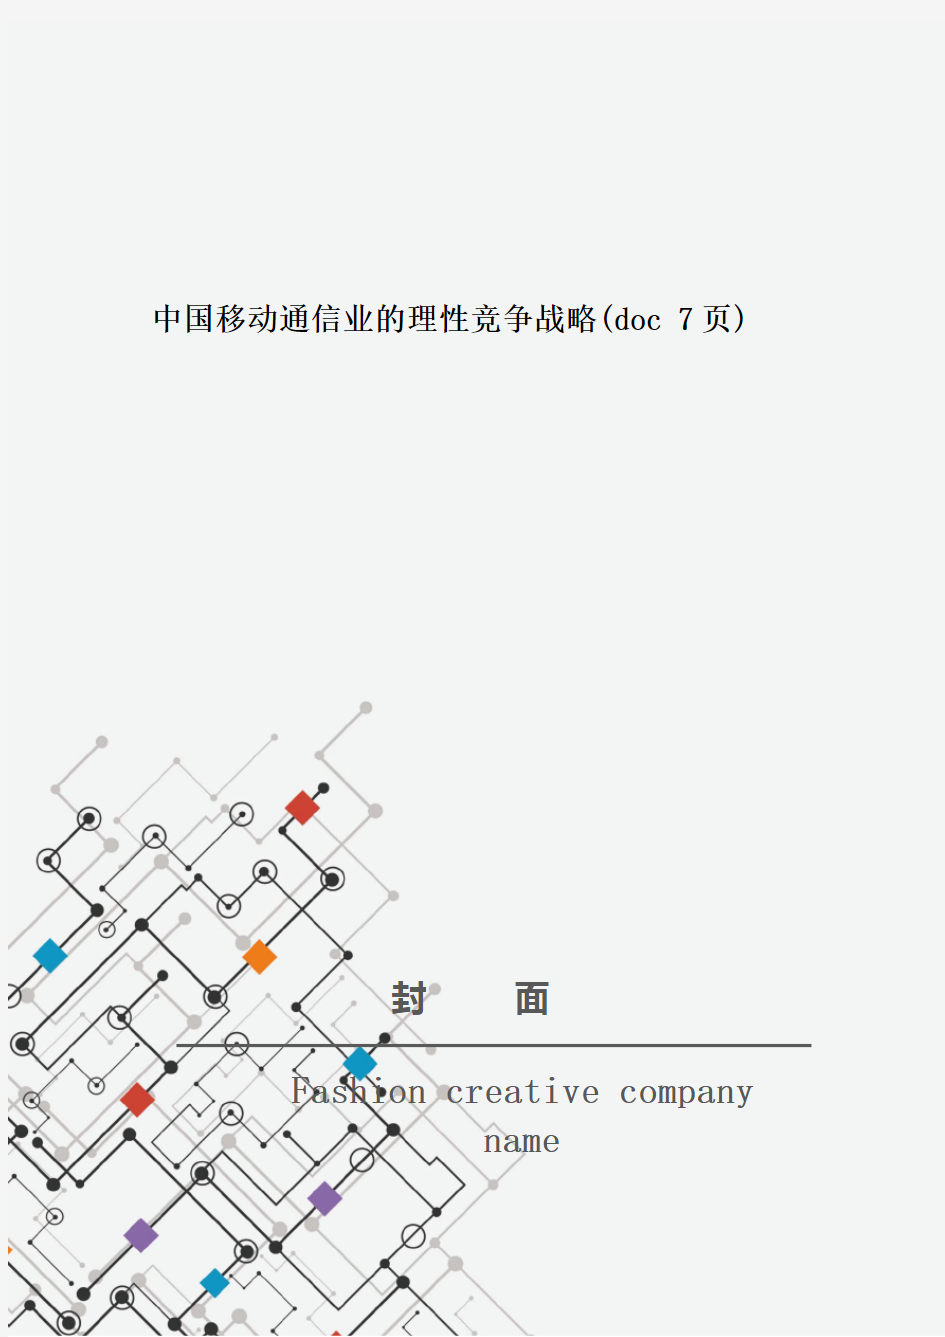 中国移动通信业的理性竞争战略(doc 7页)_New